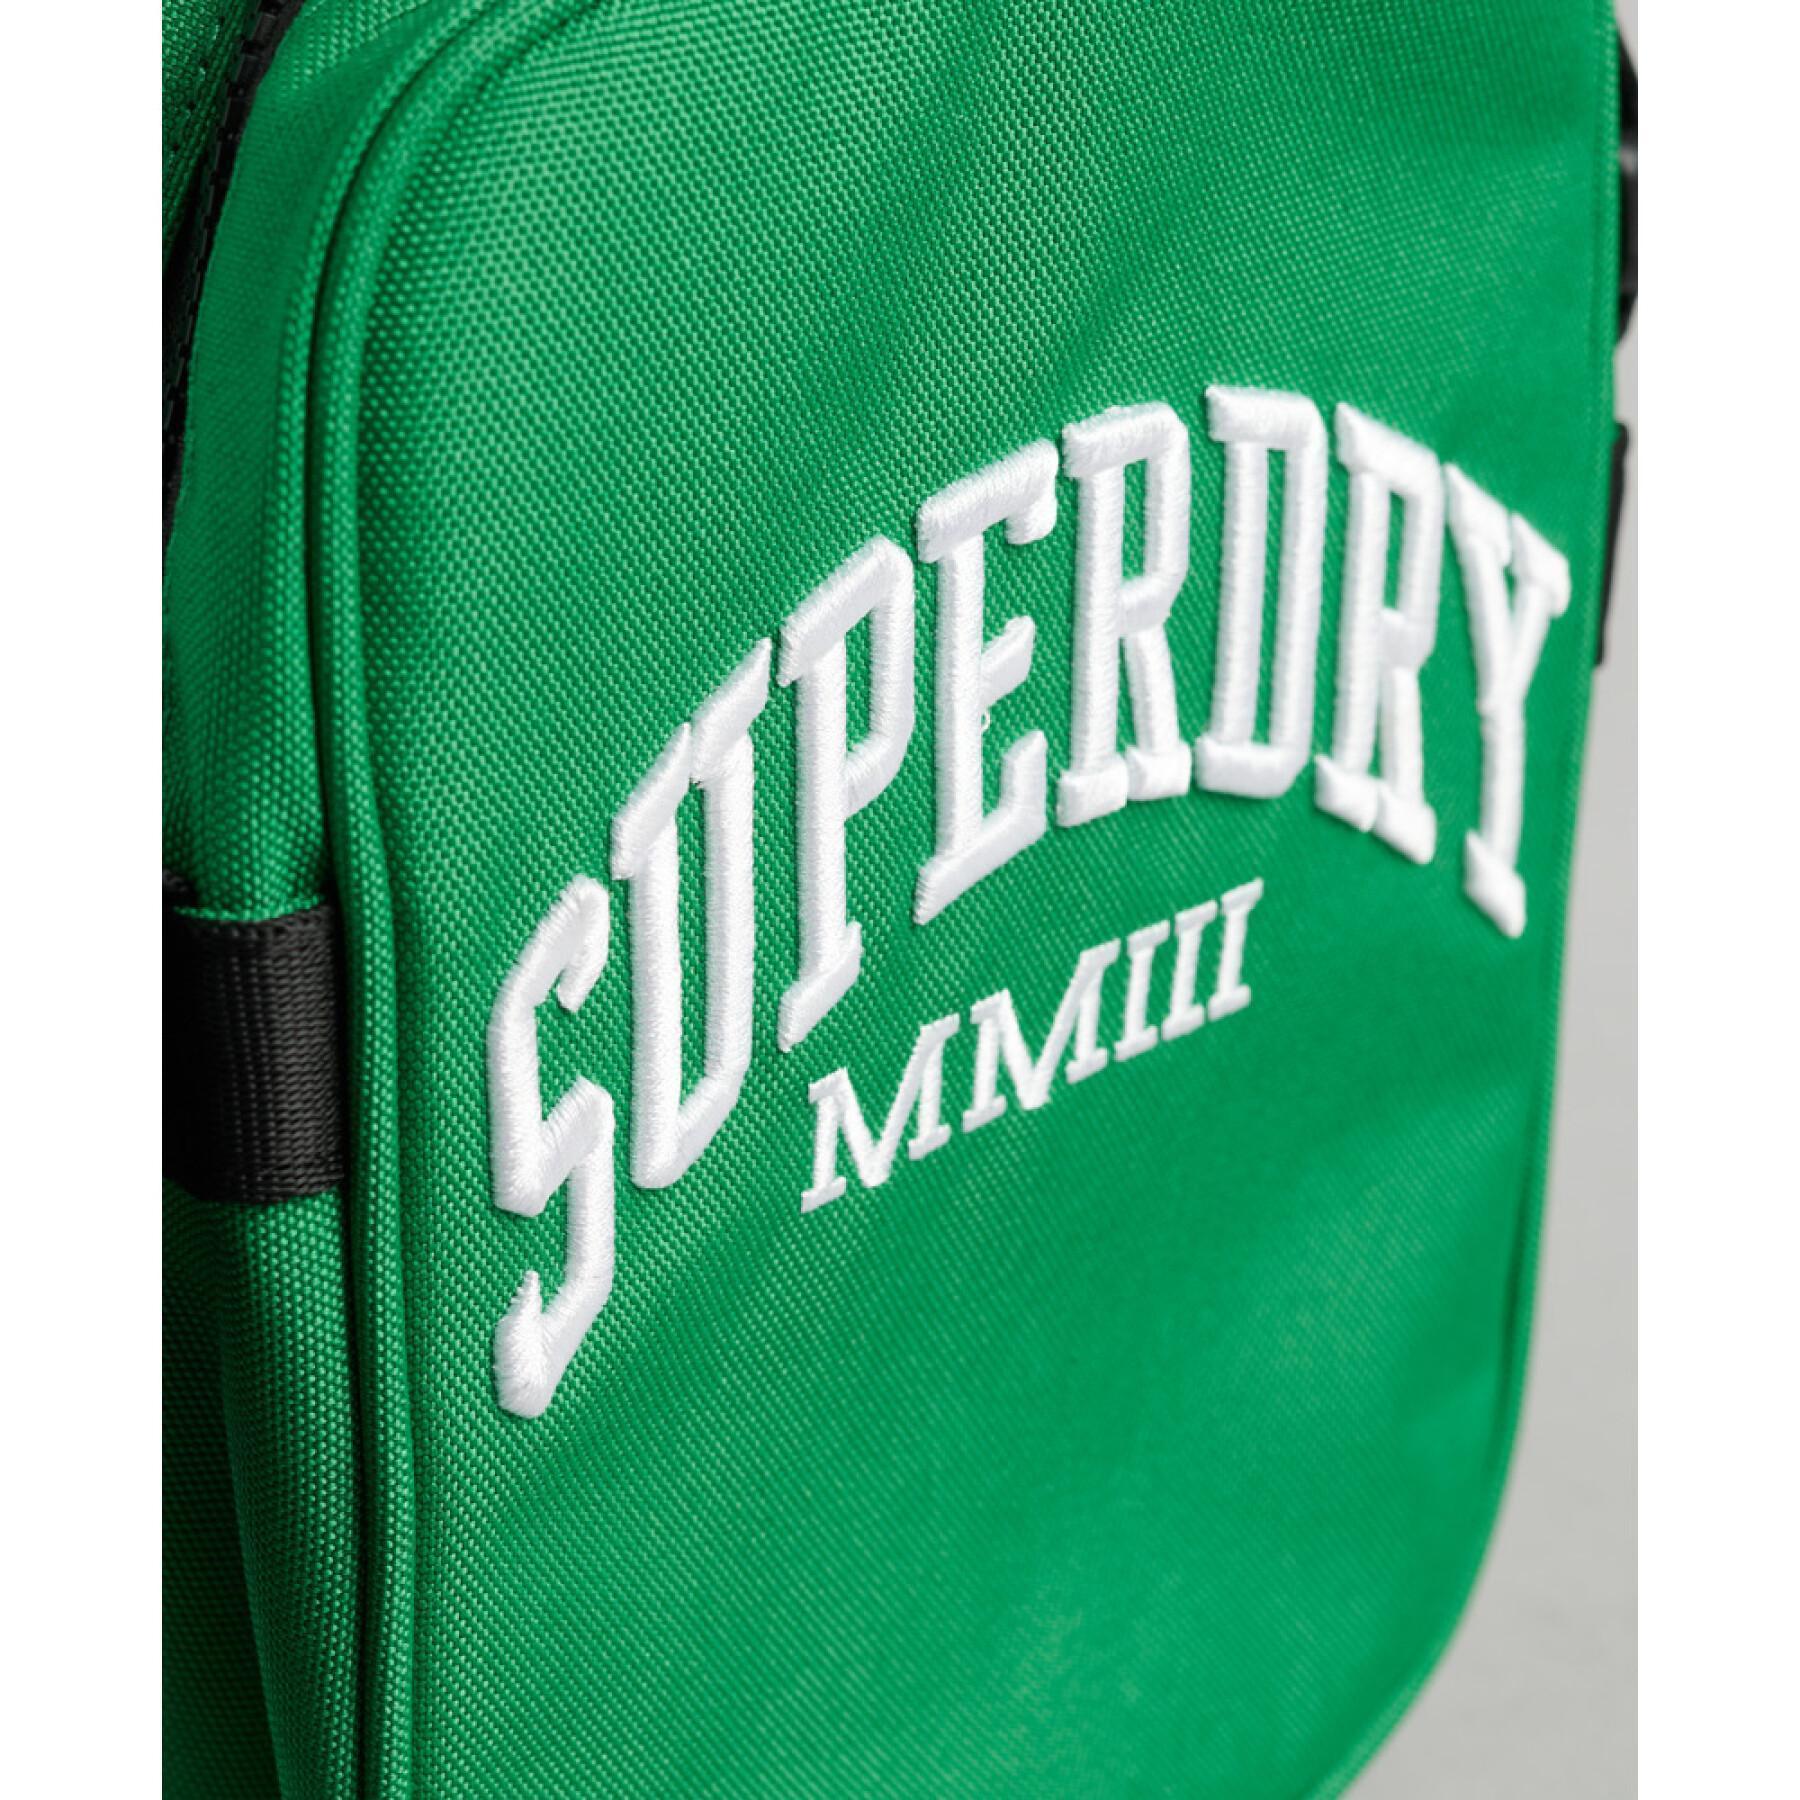 Shoulder bag Superdry